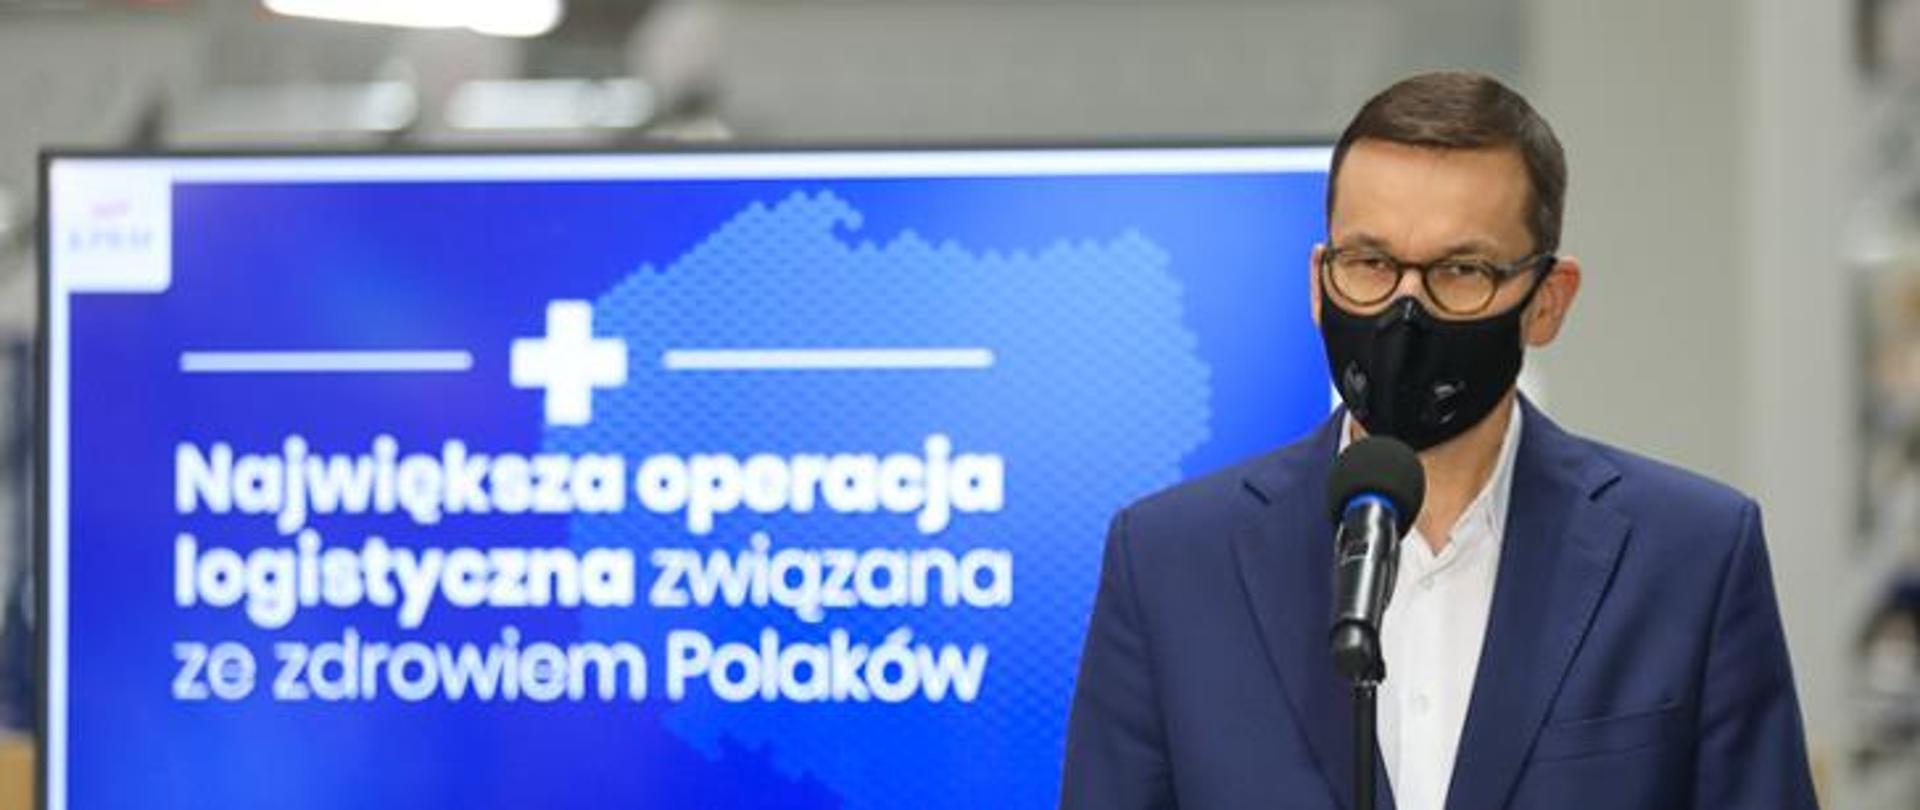 Premier Mateusz Morawiecki, w tle baner z napisem: Największa operacja logistyczna związana ze zdrowiem Polaków.